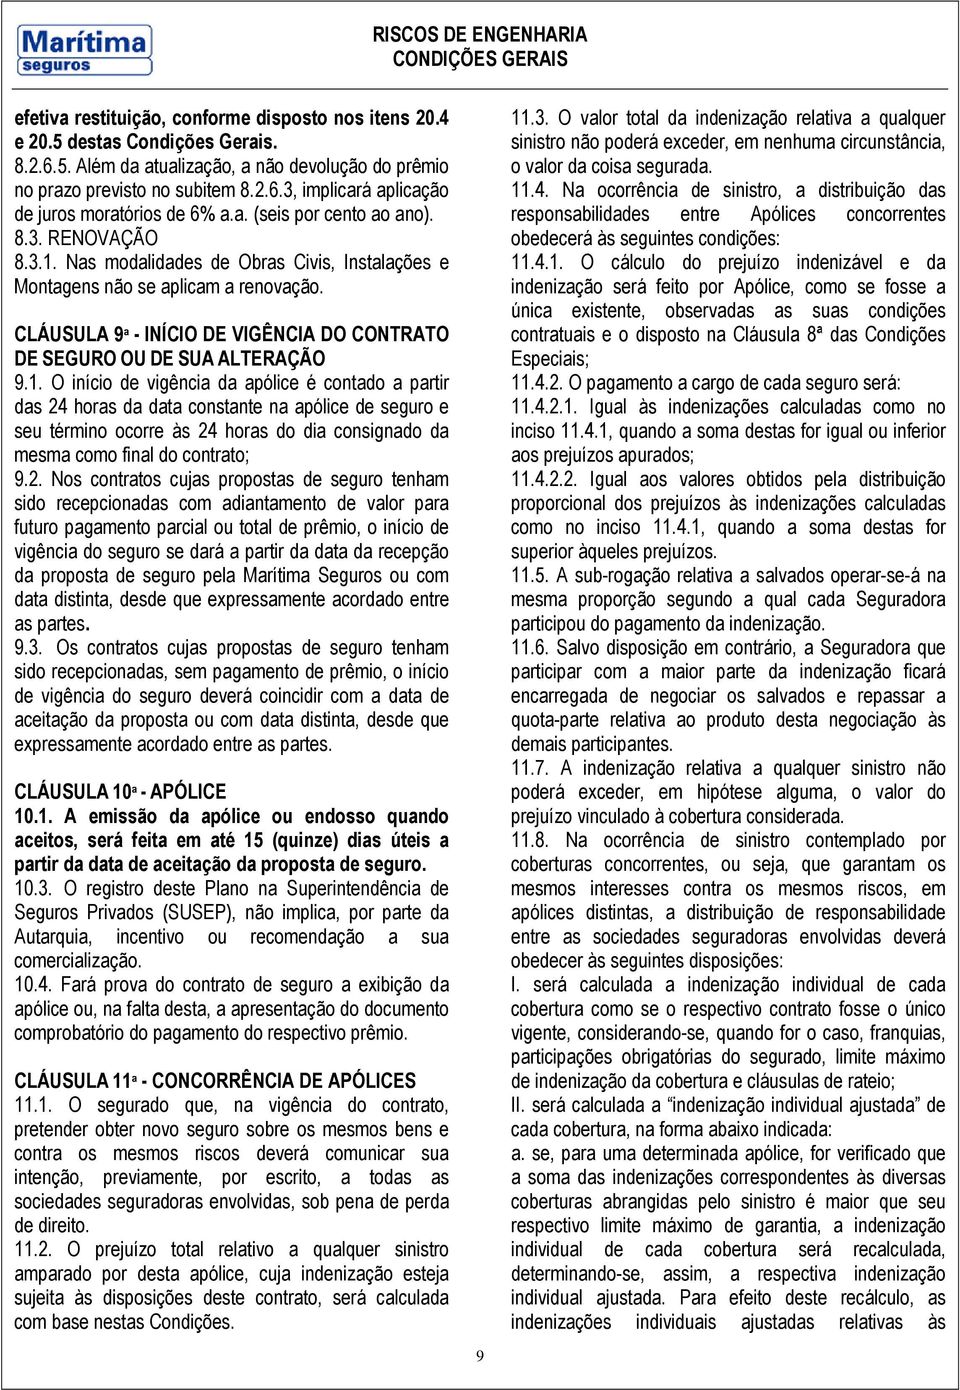 CLÁUSULA 9ª - INÍCIO DE VIGÊNCIA DO CONTRATO DE SEGURO OU DE SUA ALTERAÇÃO 9.1.